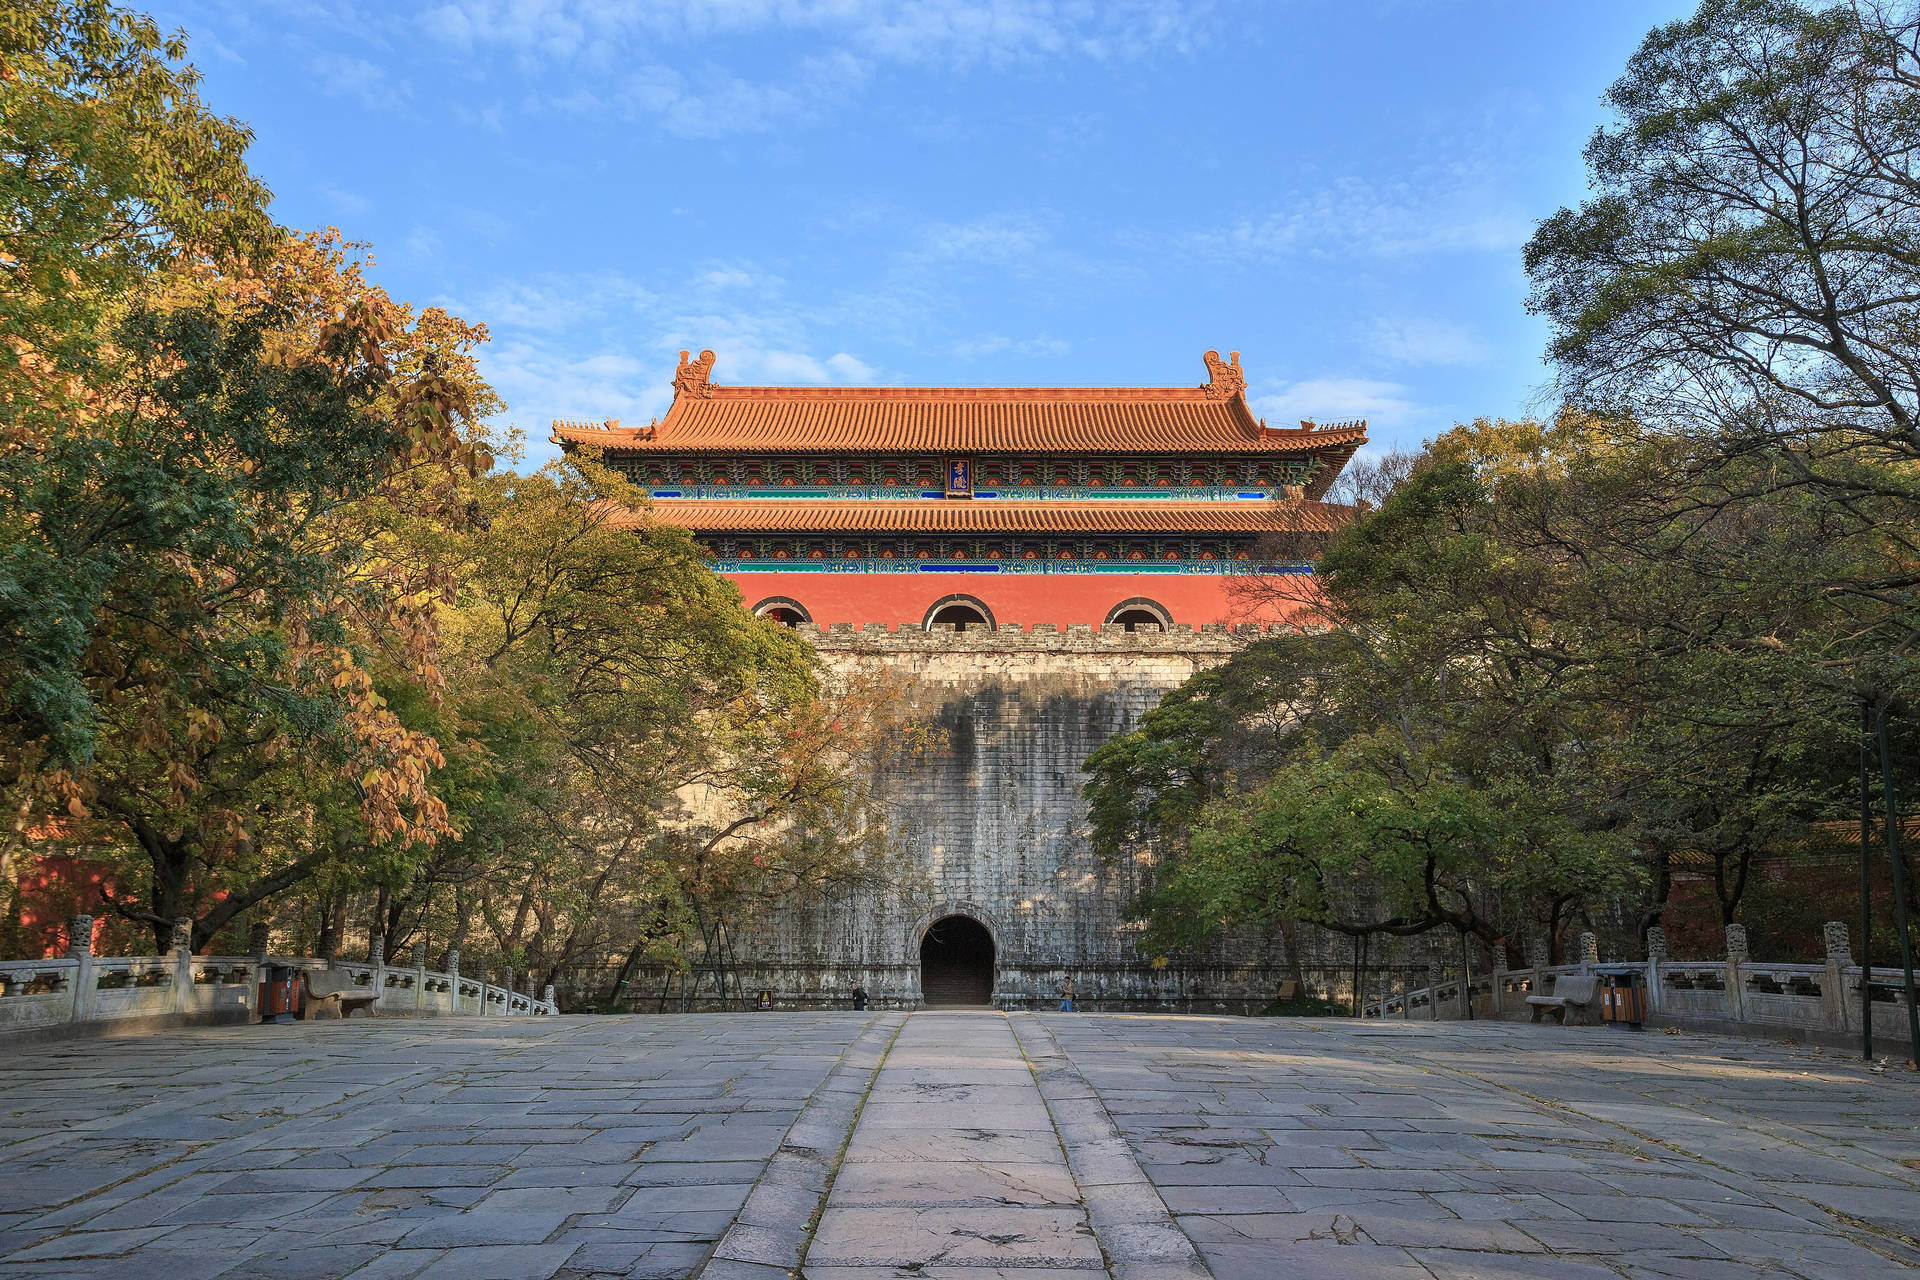 Nanjing Ming Palace